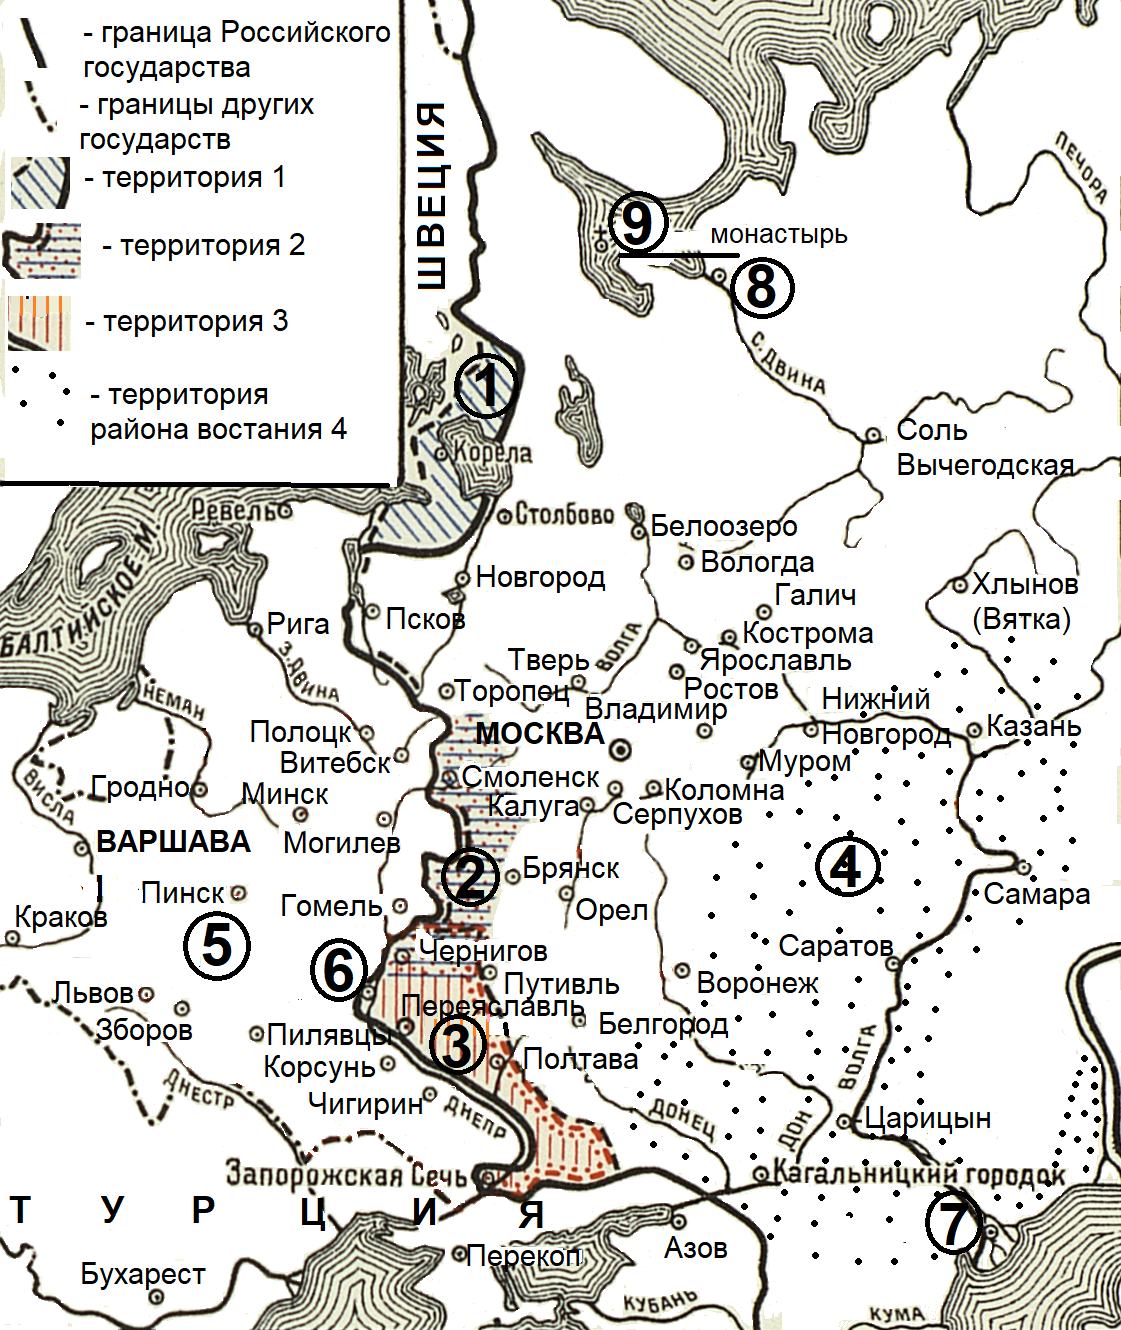 Территория обозначенная на схеме цифрой 3 была утеряна российской империей по условиям